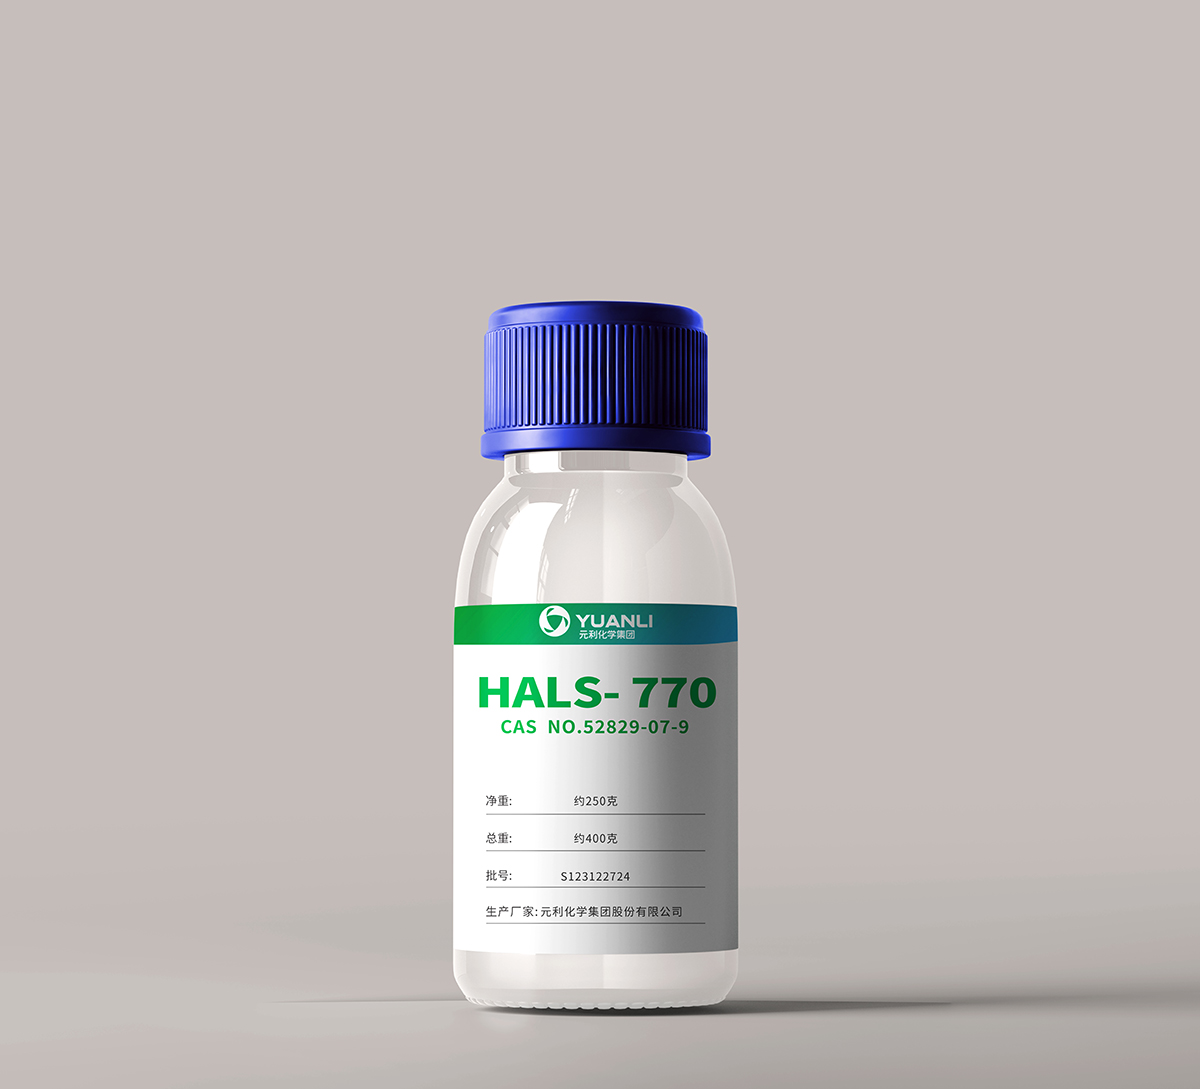 HALS- 770